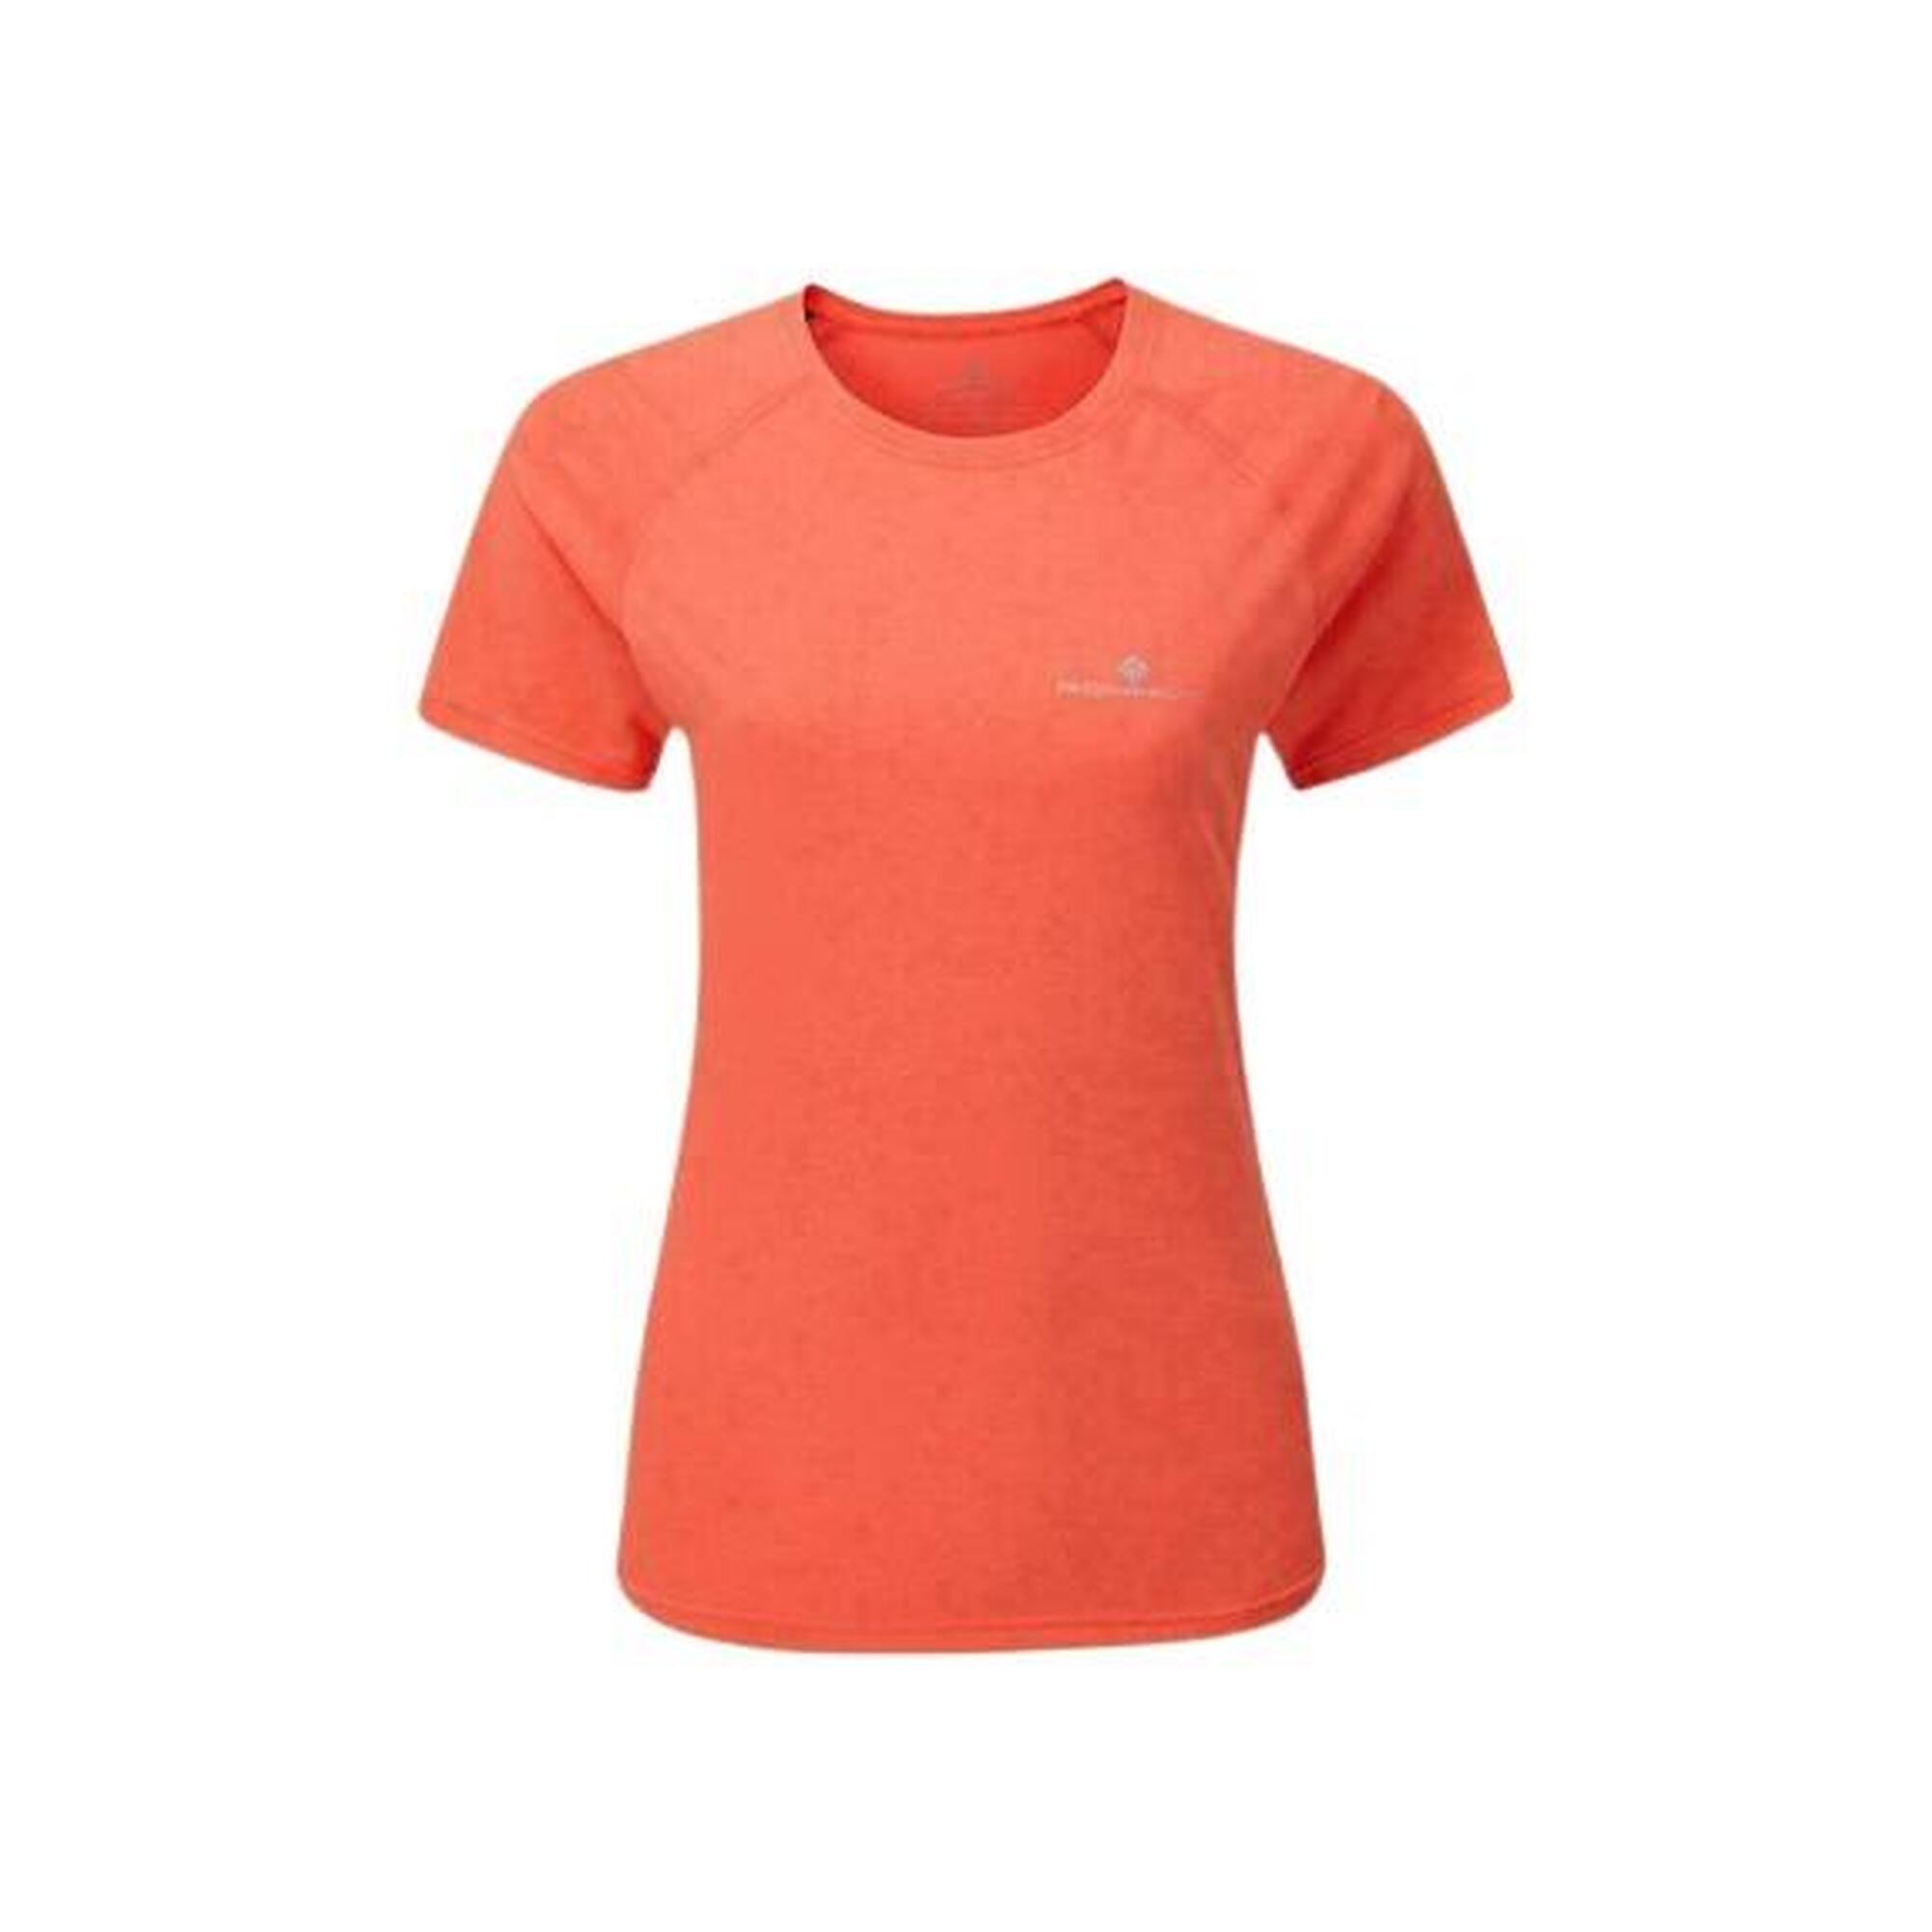 Ronhill Core Short Sleeve Running T-Shirt Womens 1/2